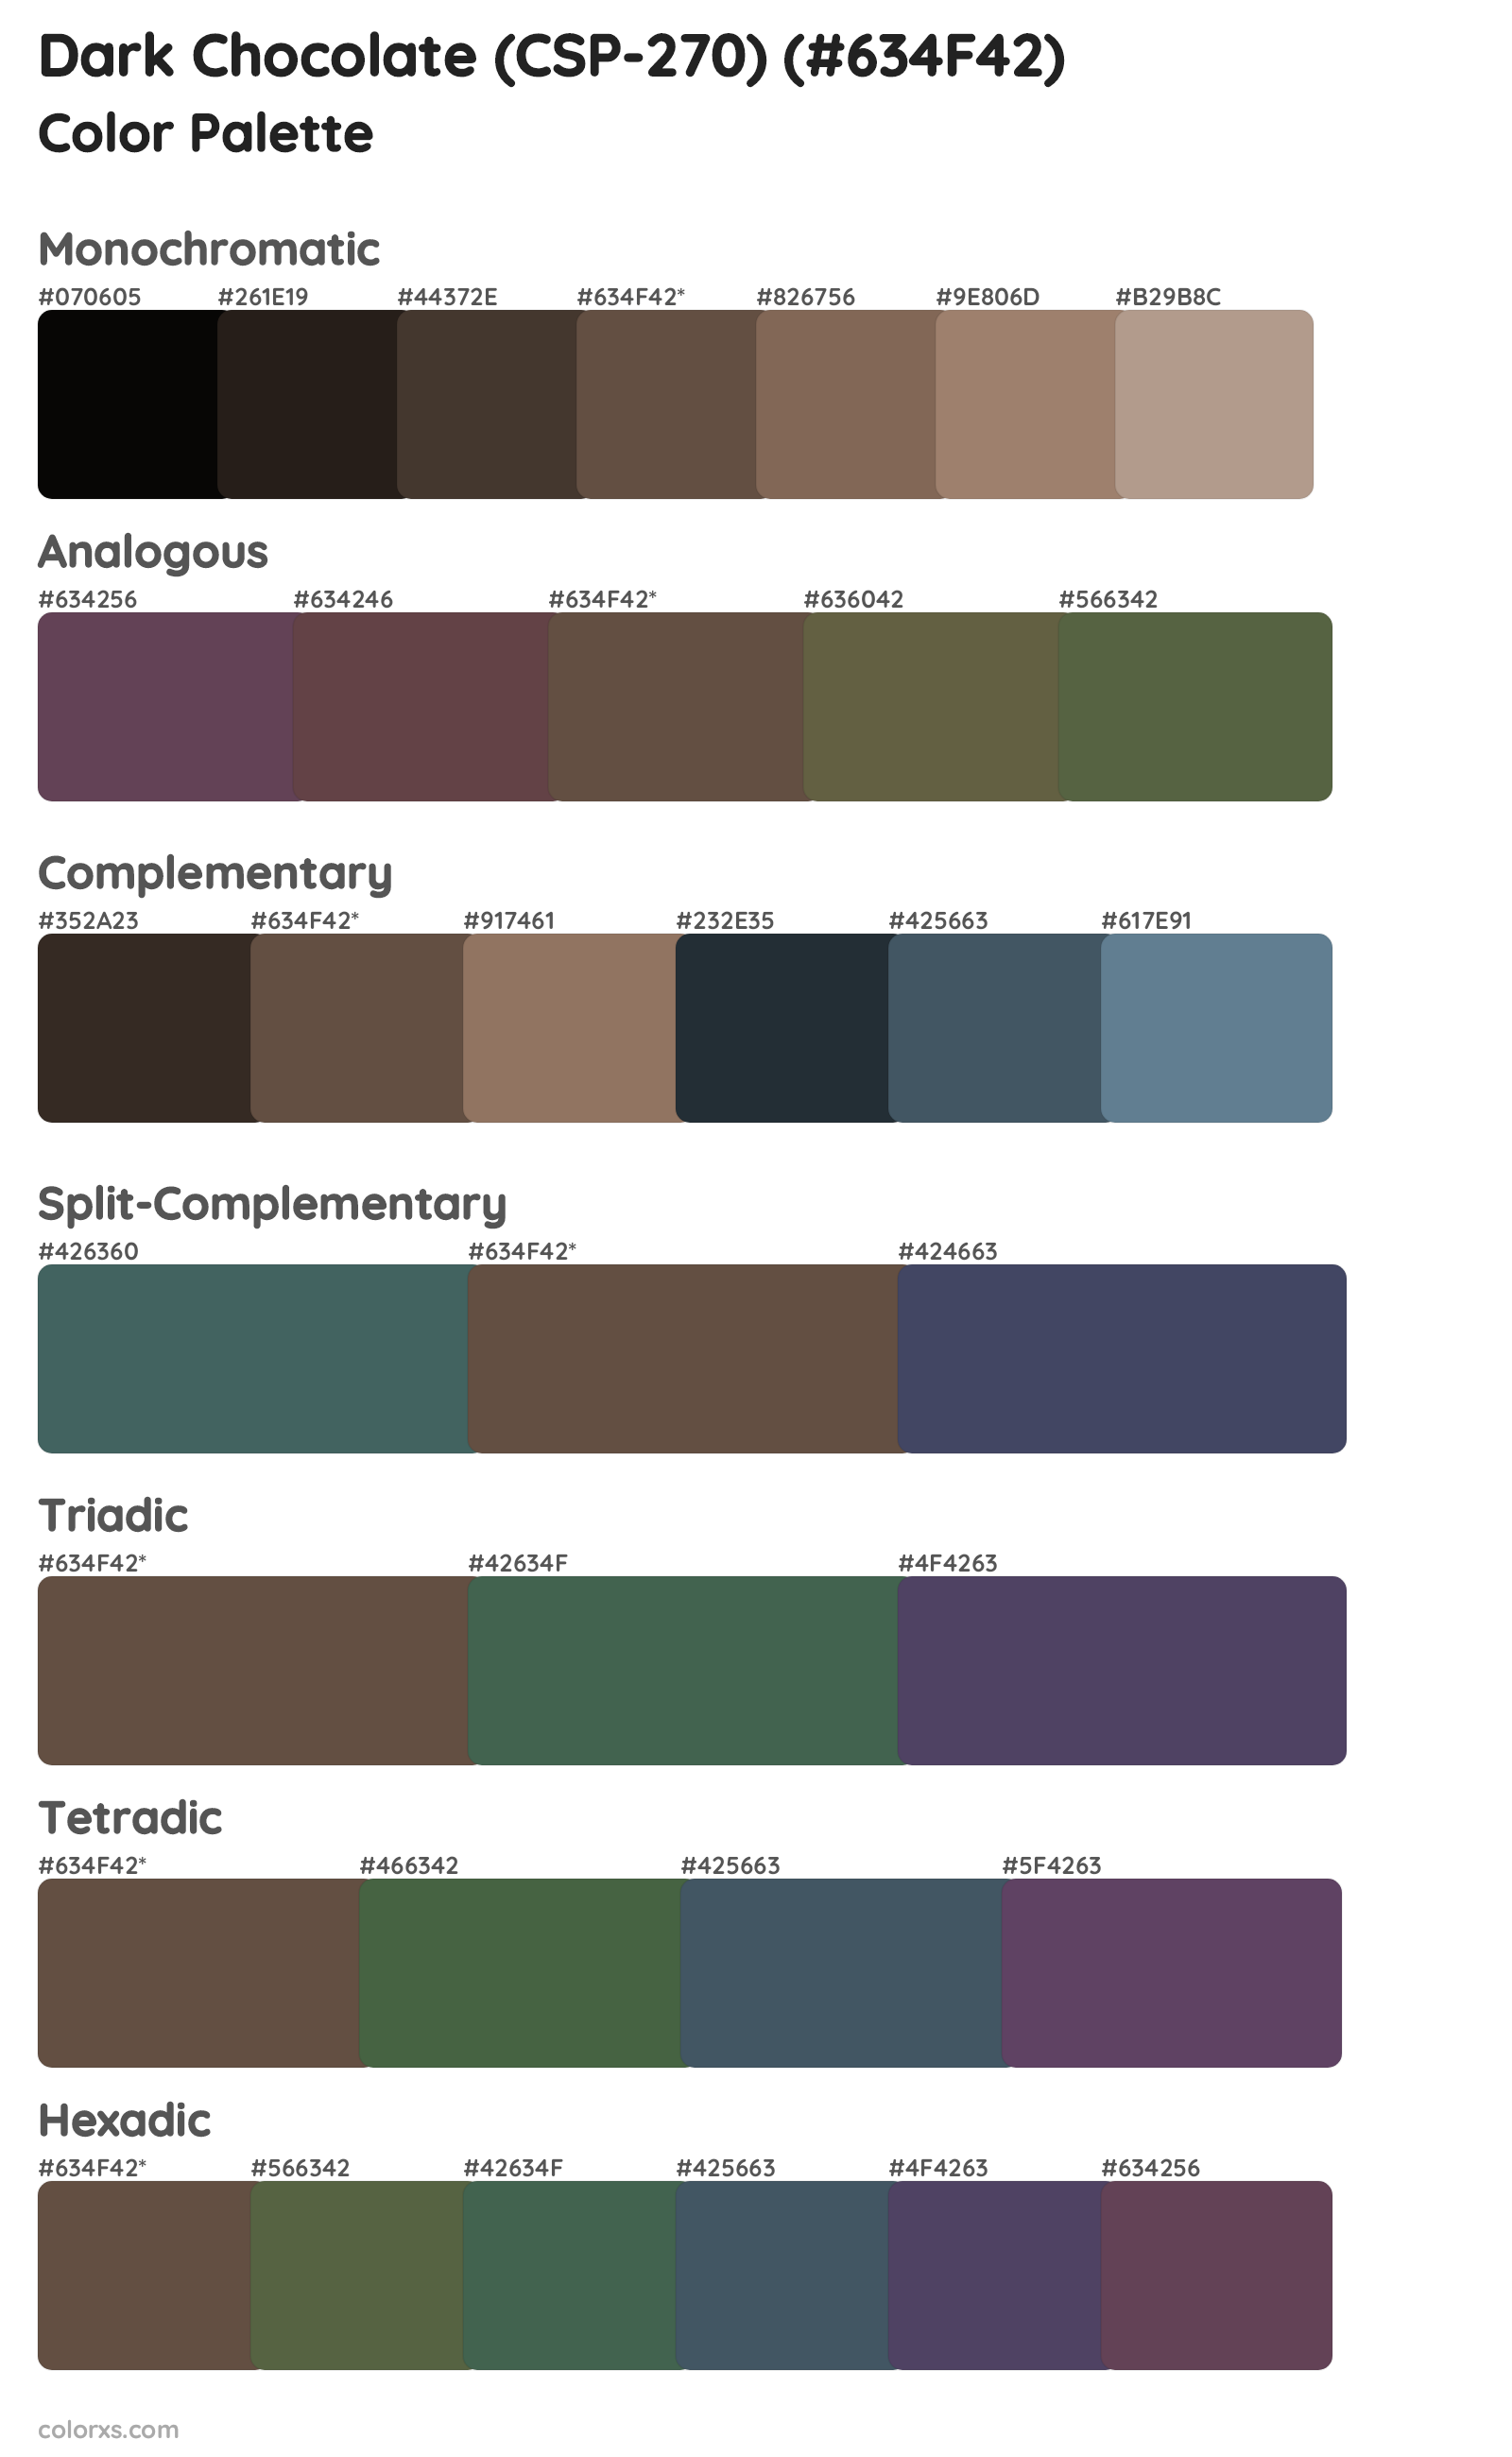 Dark Chocolate (CSP-270) Color Scheme Palettes